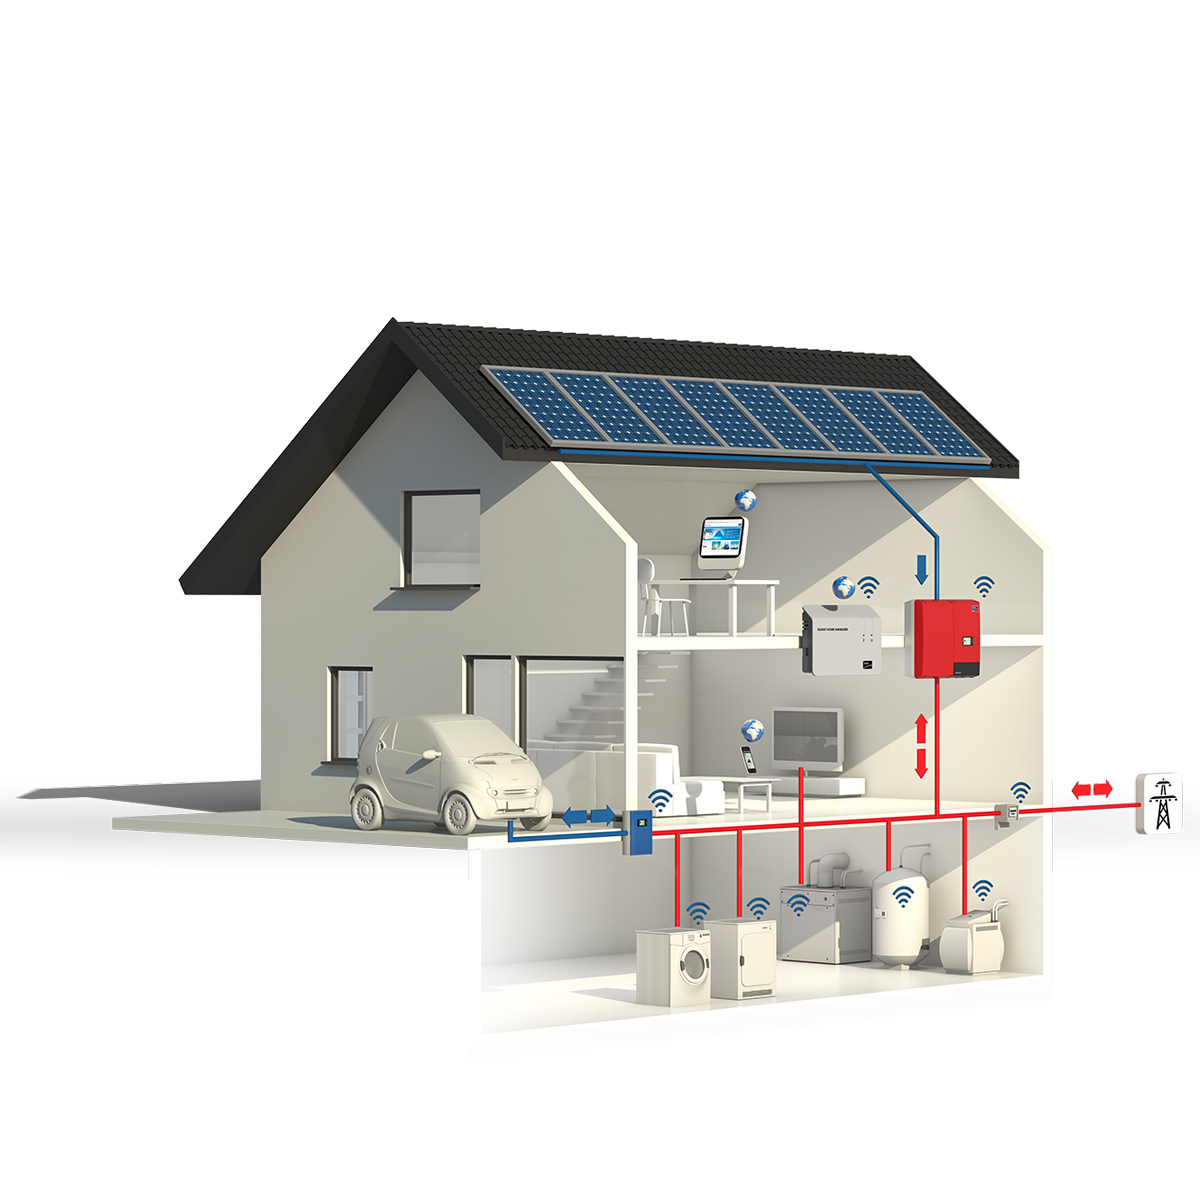 Sfrutta la potenza del sole: set completo di sistema di energia solare per la tua casa